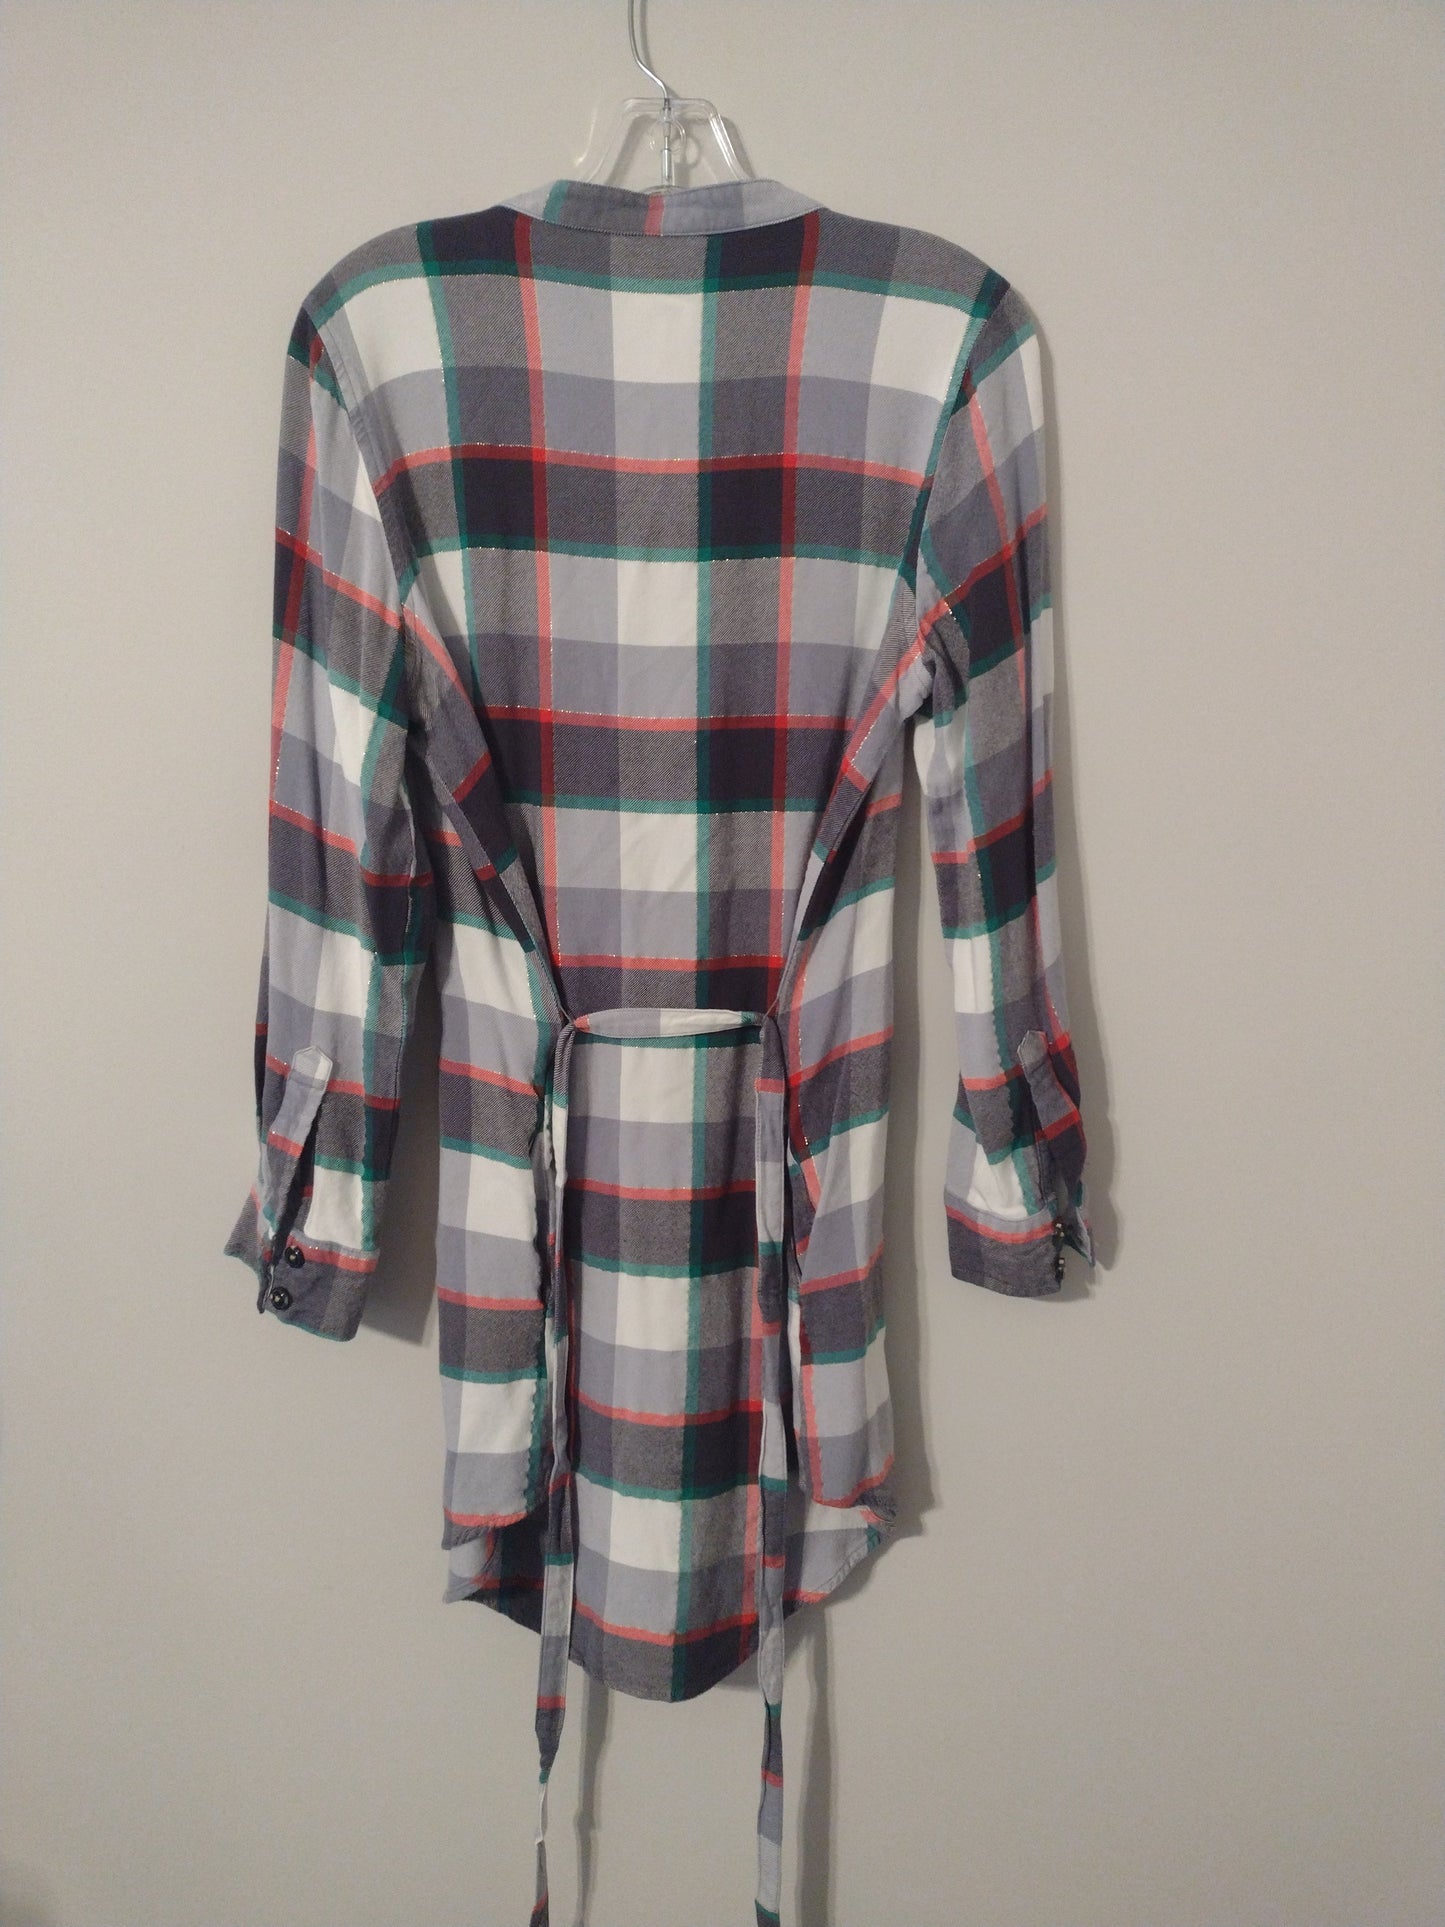 Dress Casual Midi By Matilda Jane  Size: L